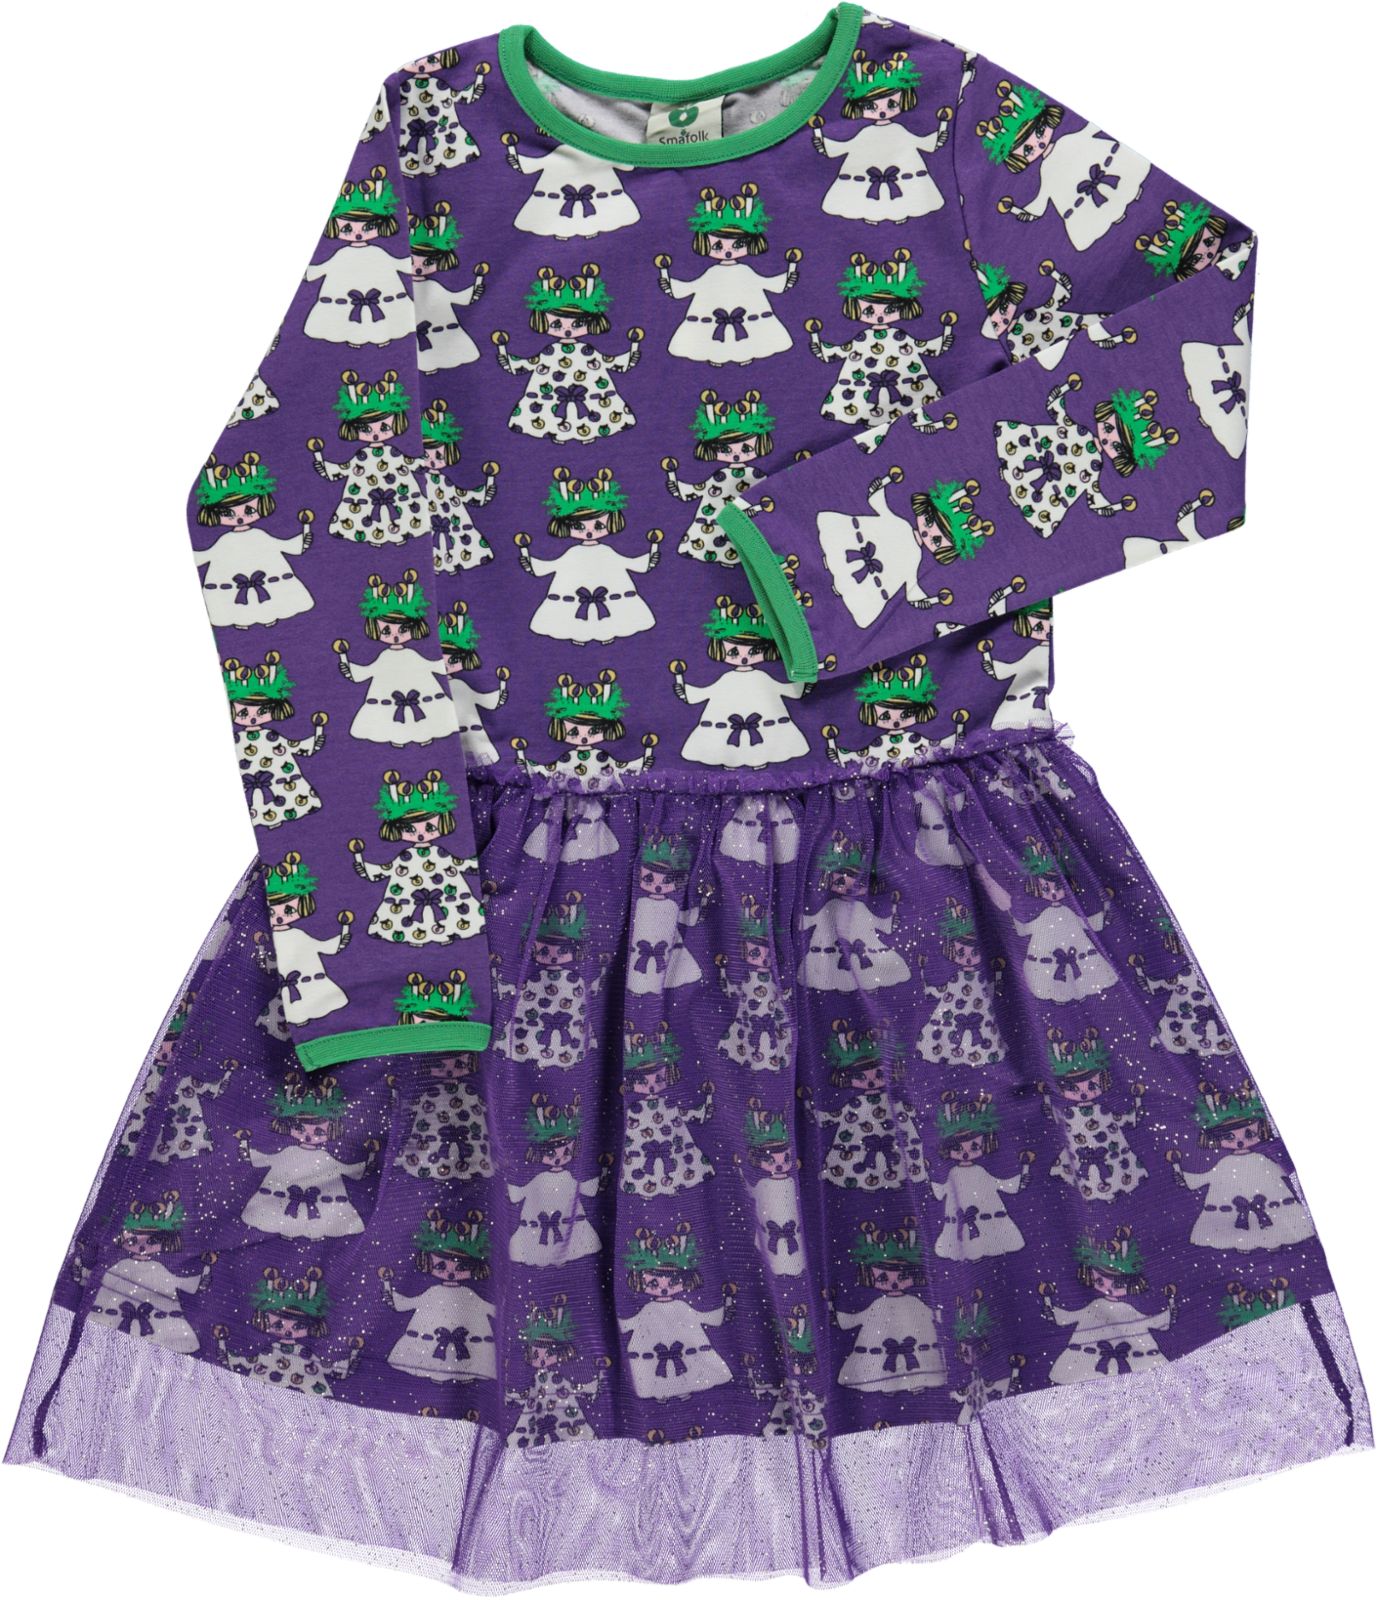 Kjole fra småfolk til børn i lilla med mønster